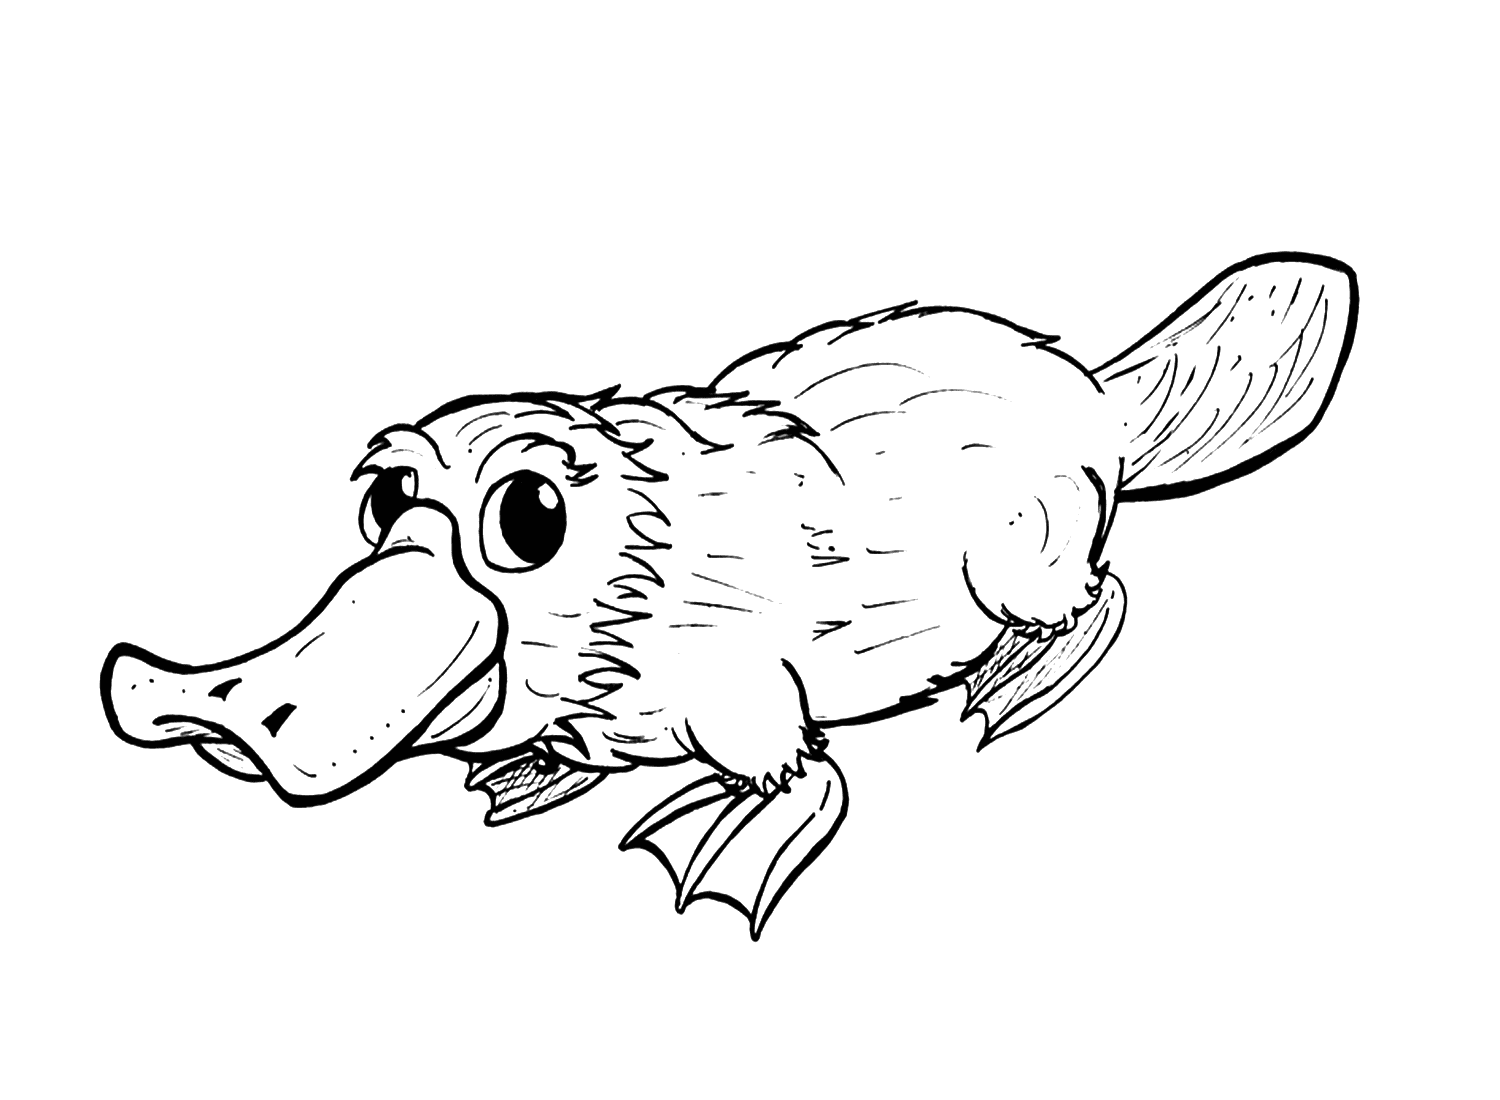 Ornitorinco realistico di Platypus